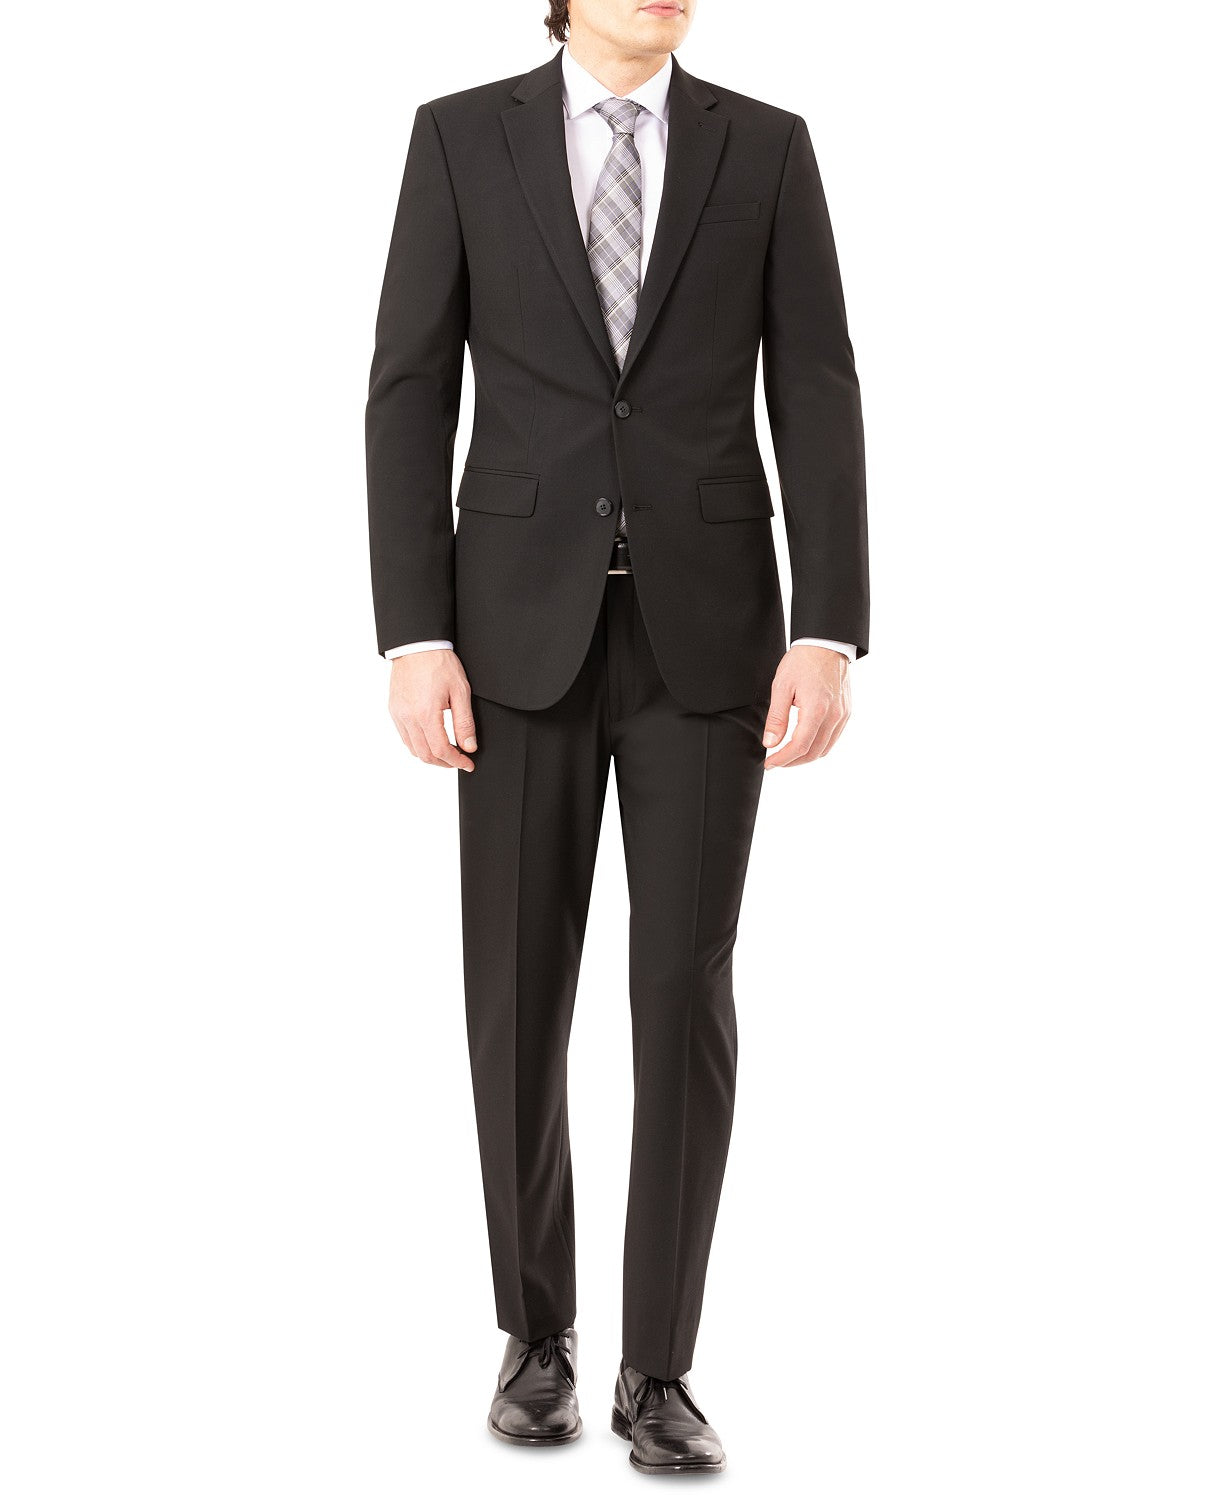 IZOD Men's Classic-Fit Suit Jacket Black 44S / 36 x 30 Flat Pant ...